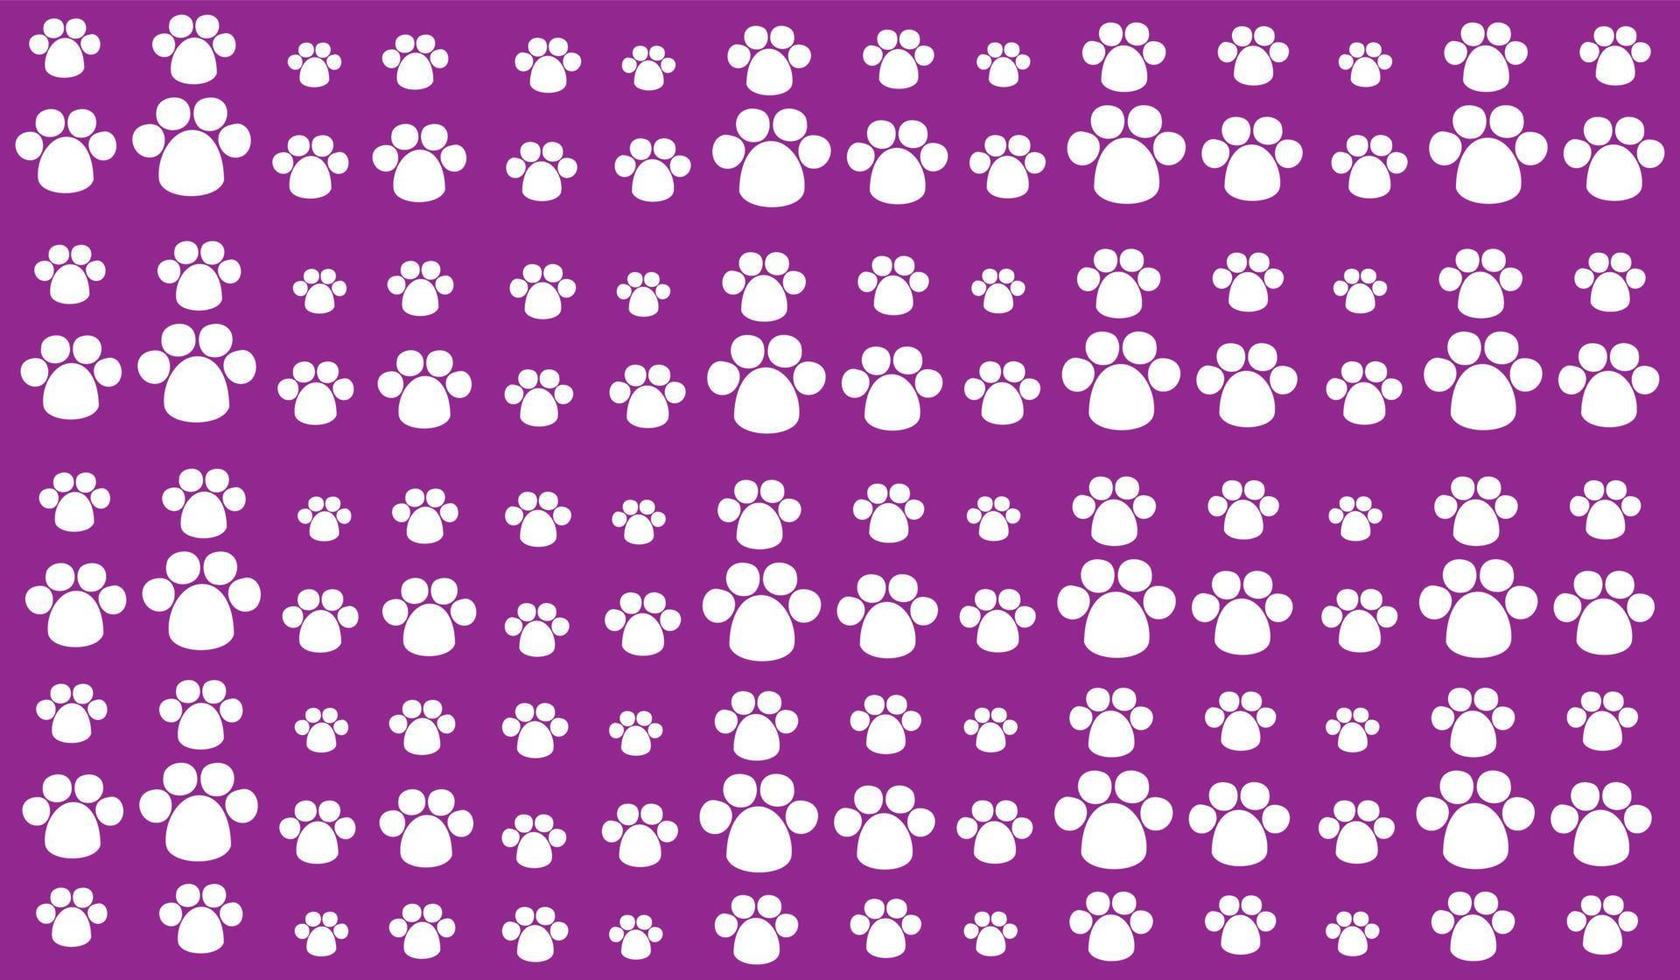 padrão de fundo sem costura de símbolos de animais de estimação brancos uniformemente espaçados de diferentes tamanhos e opacidade. ilustração vetorial em fundo roxo vetor